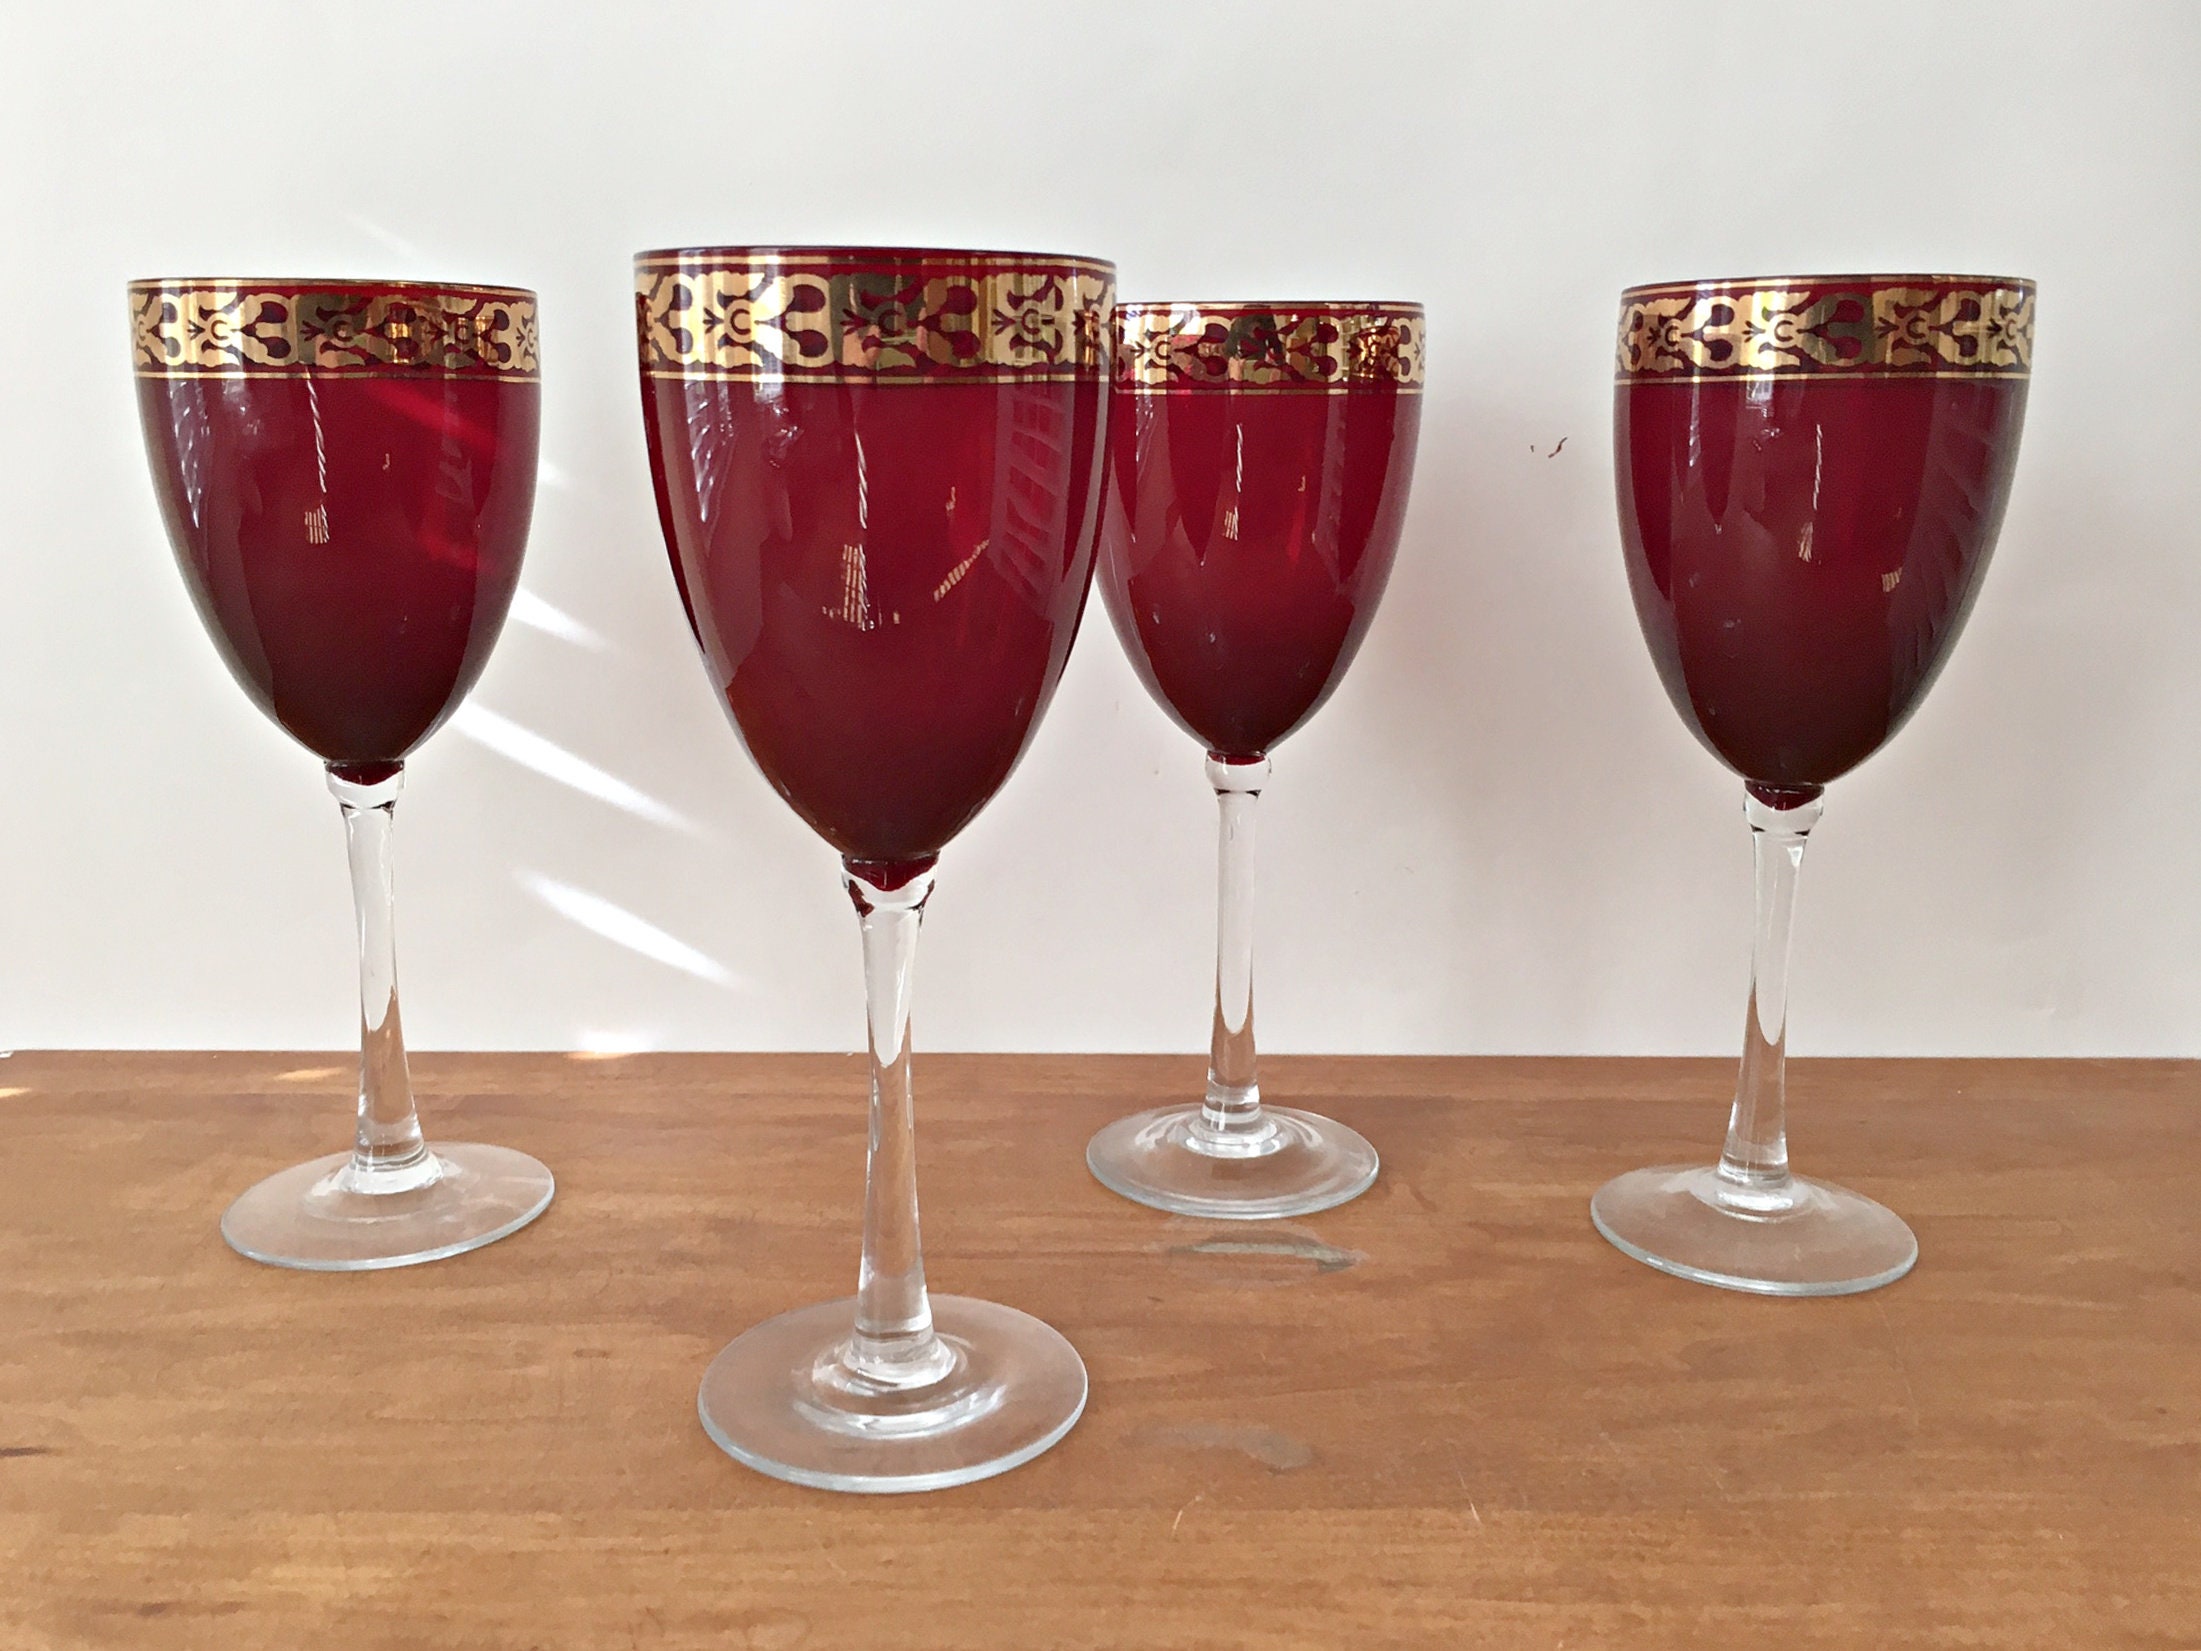 Golden Royale Crystal Round Red Wine Goblet - 21 oz - Set of 2